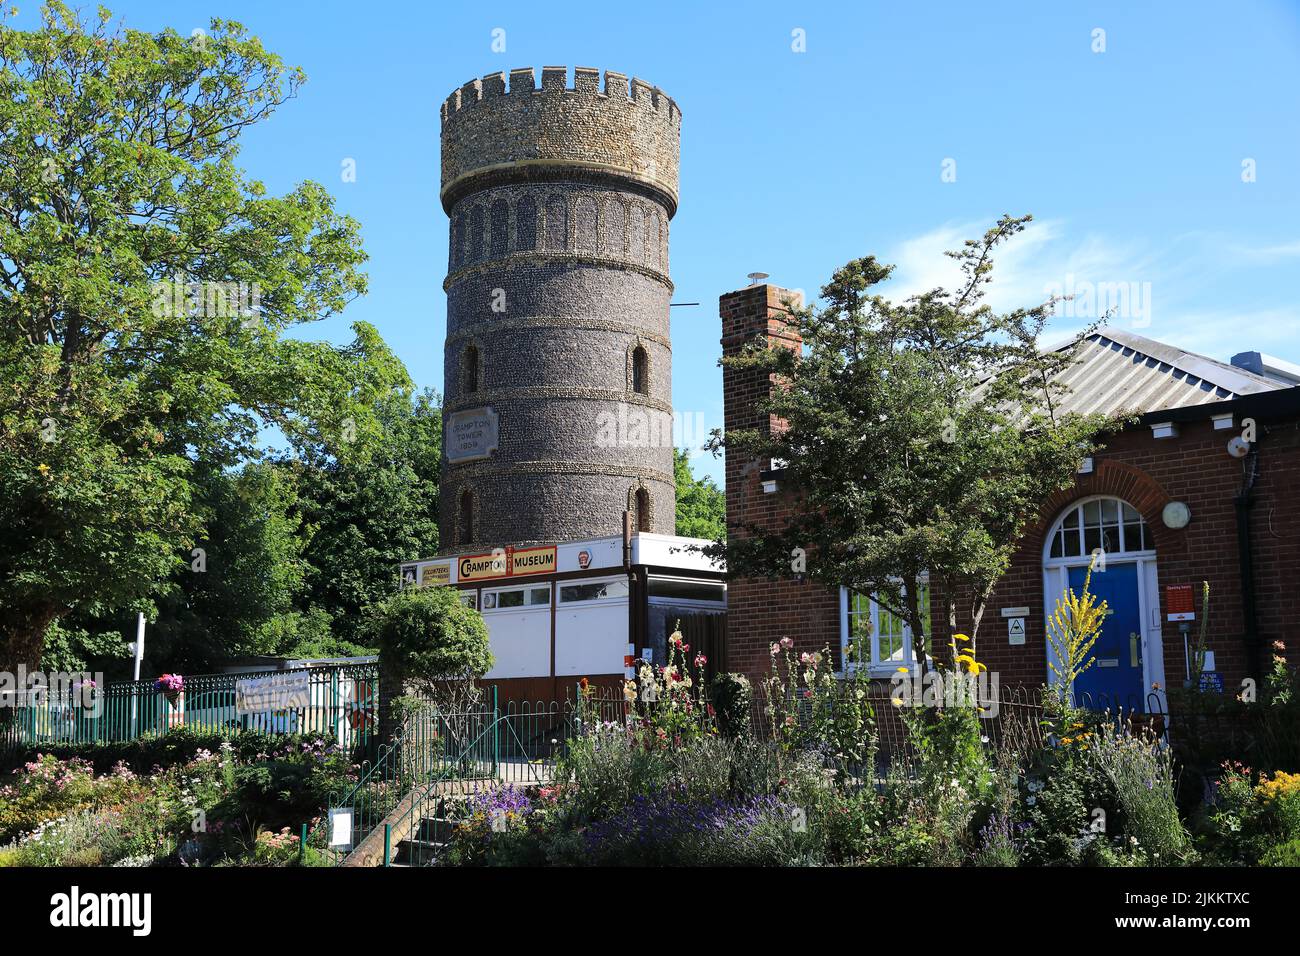 Crampton Tower, un museo de historia local, para exposiciones de trenes y trenes y modelos en una histórica torre de suministro de agua, en Broadway, Broadstairs, Kent Foto de stock